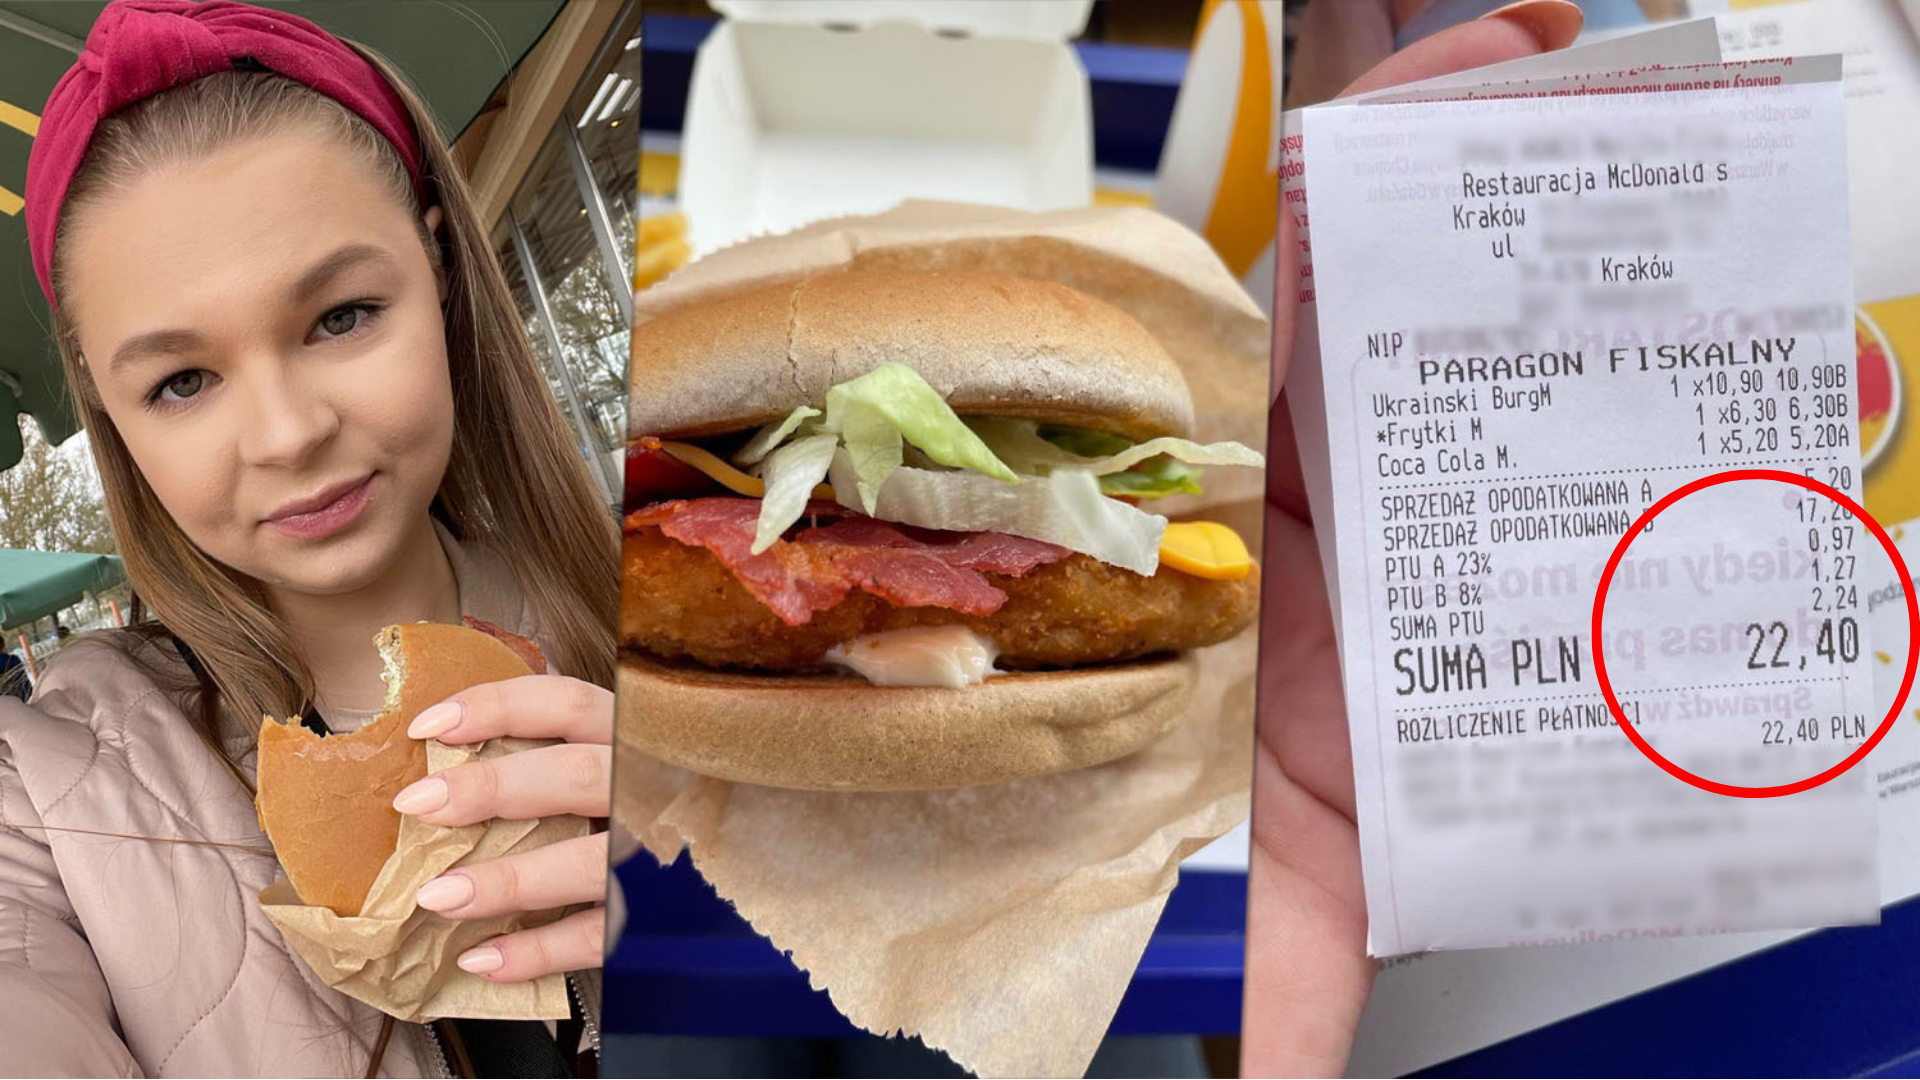 Ukraiński Burger w McDonald's. Sprawdziliśmy cenę i smak - Podróże